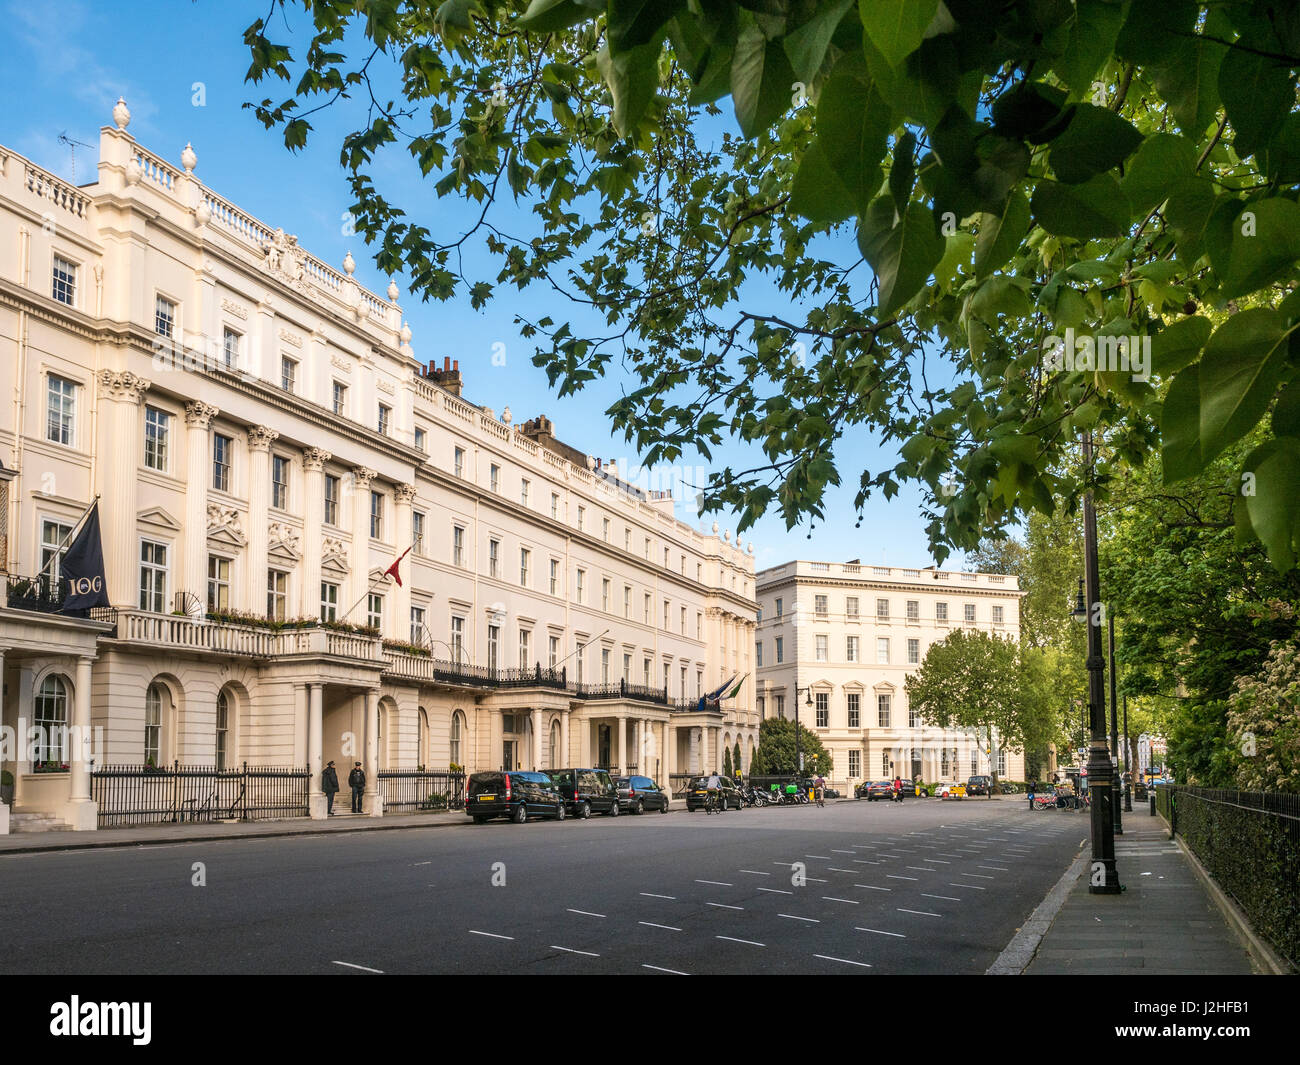 Residences in Belgrave Square, London. Stock Photo